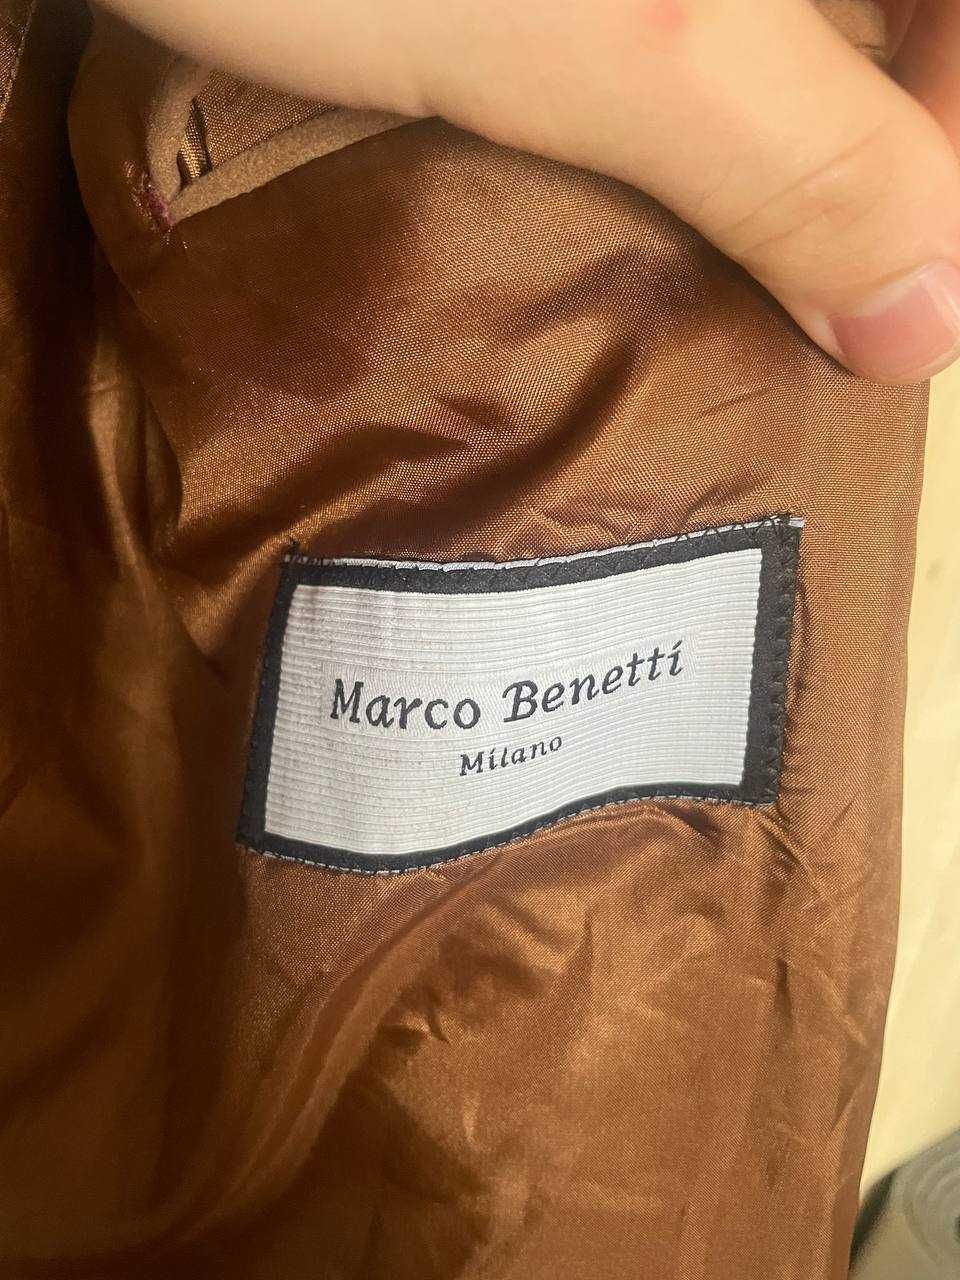 Італійське коротке пальто Marco benetti